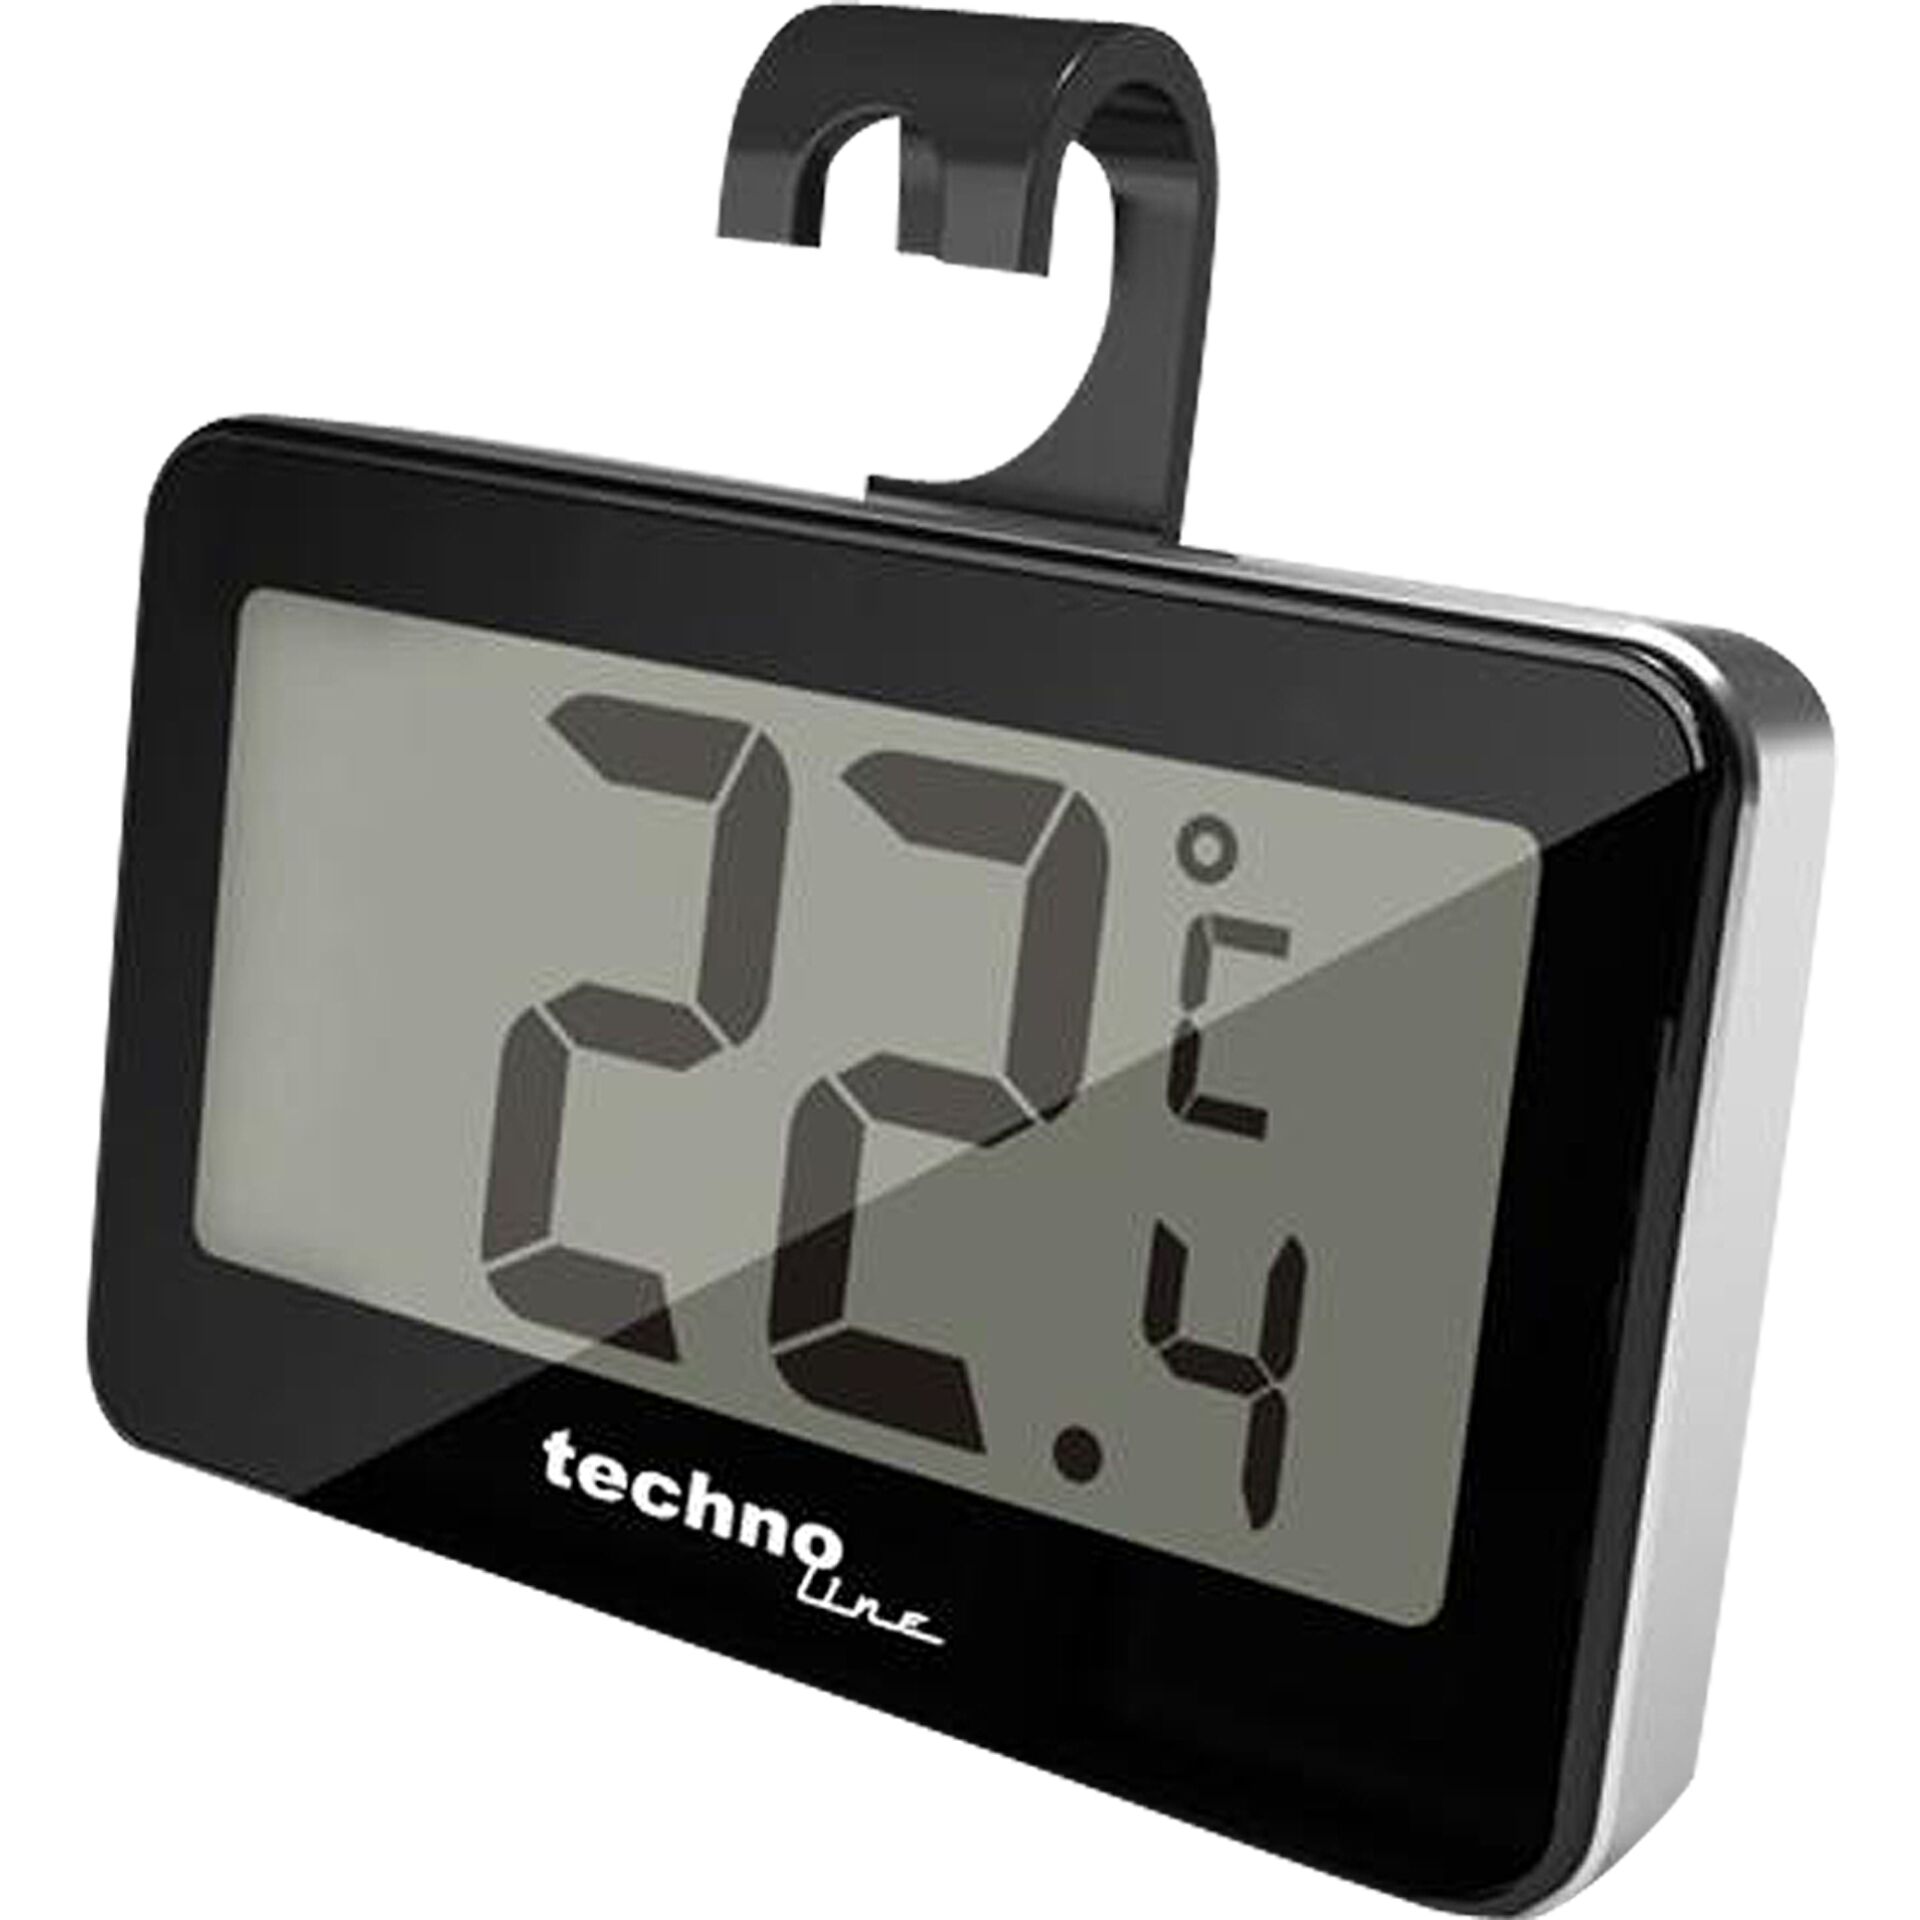 Technoline WS 7012 Kühlschrankthermometer